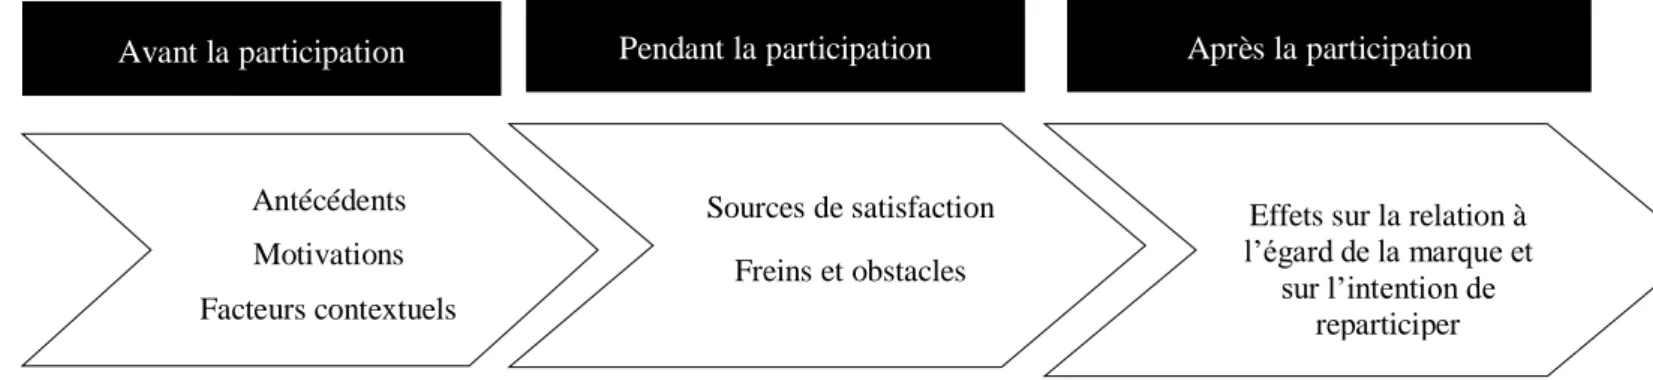 Figure 6 : Les trois phases décrivant la participation à un concours créatif